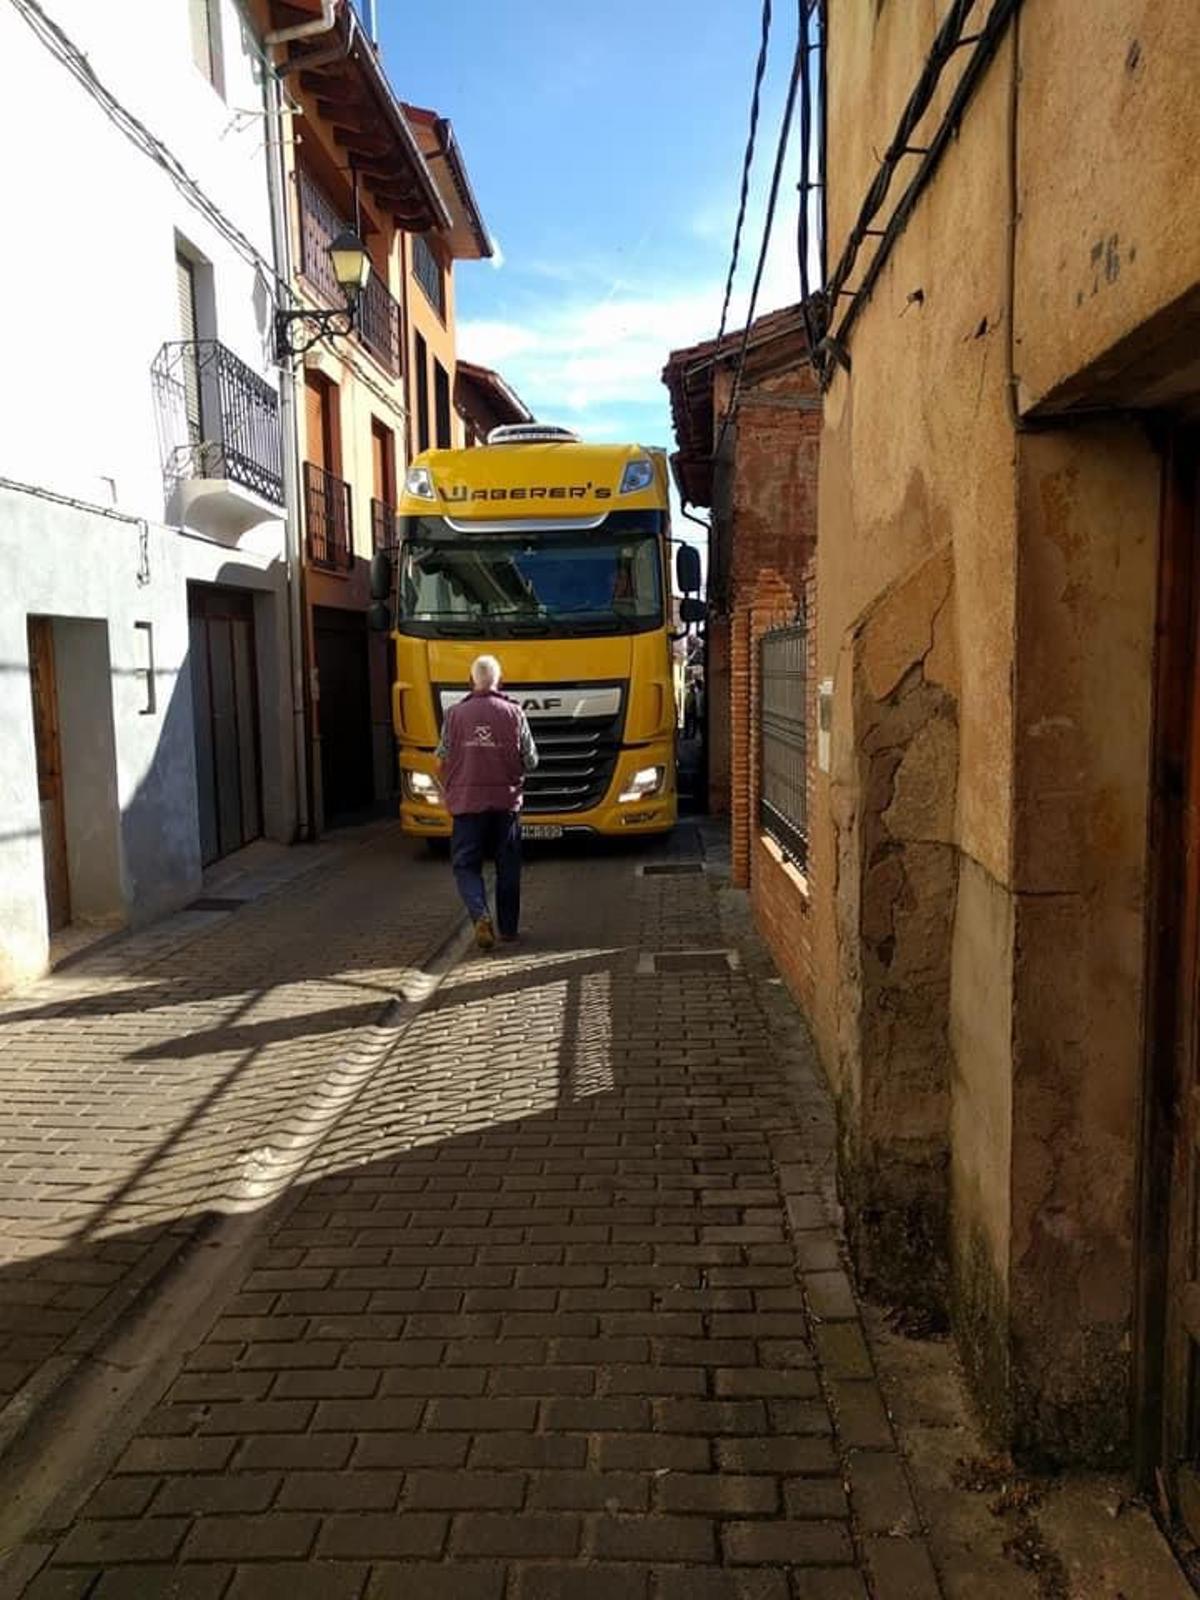 Camión de Waberer’s International atrapado en una calle estrecha de San Millán de la Cogolla.